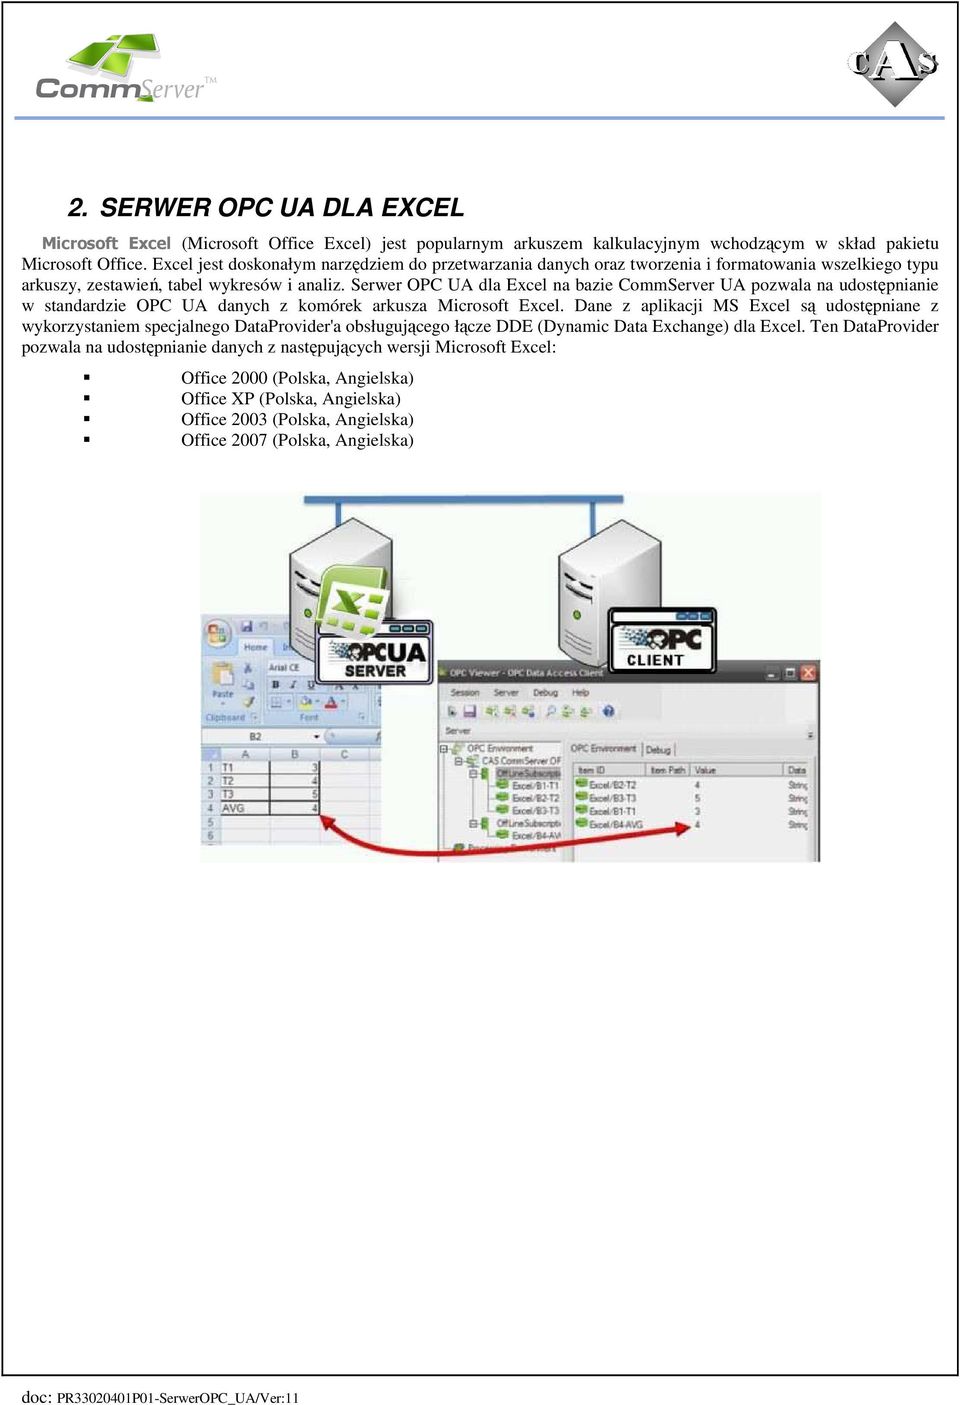 Serwer OPC UA dla Excel na bazie CommServer UA pozwala na udostępnianie w standardzie OPC UA danych z komórek arkusza Microsoft Excel.